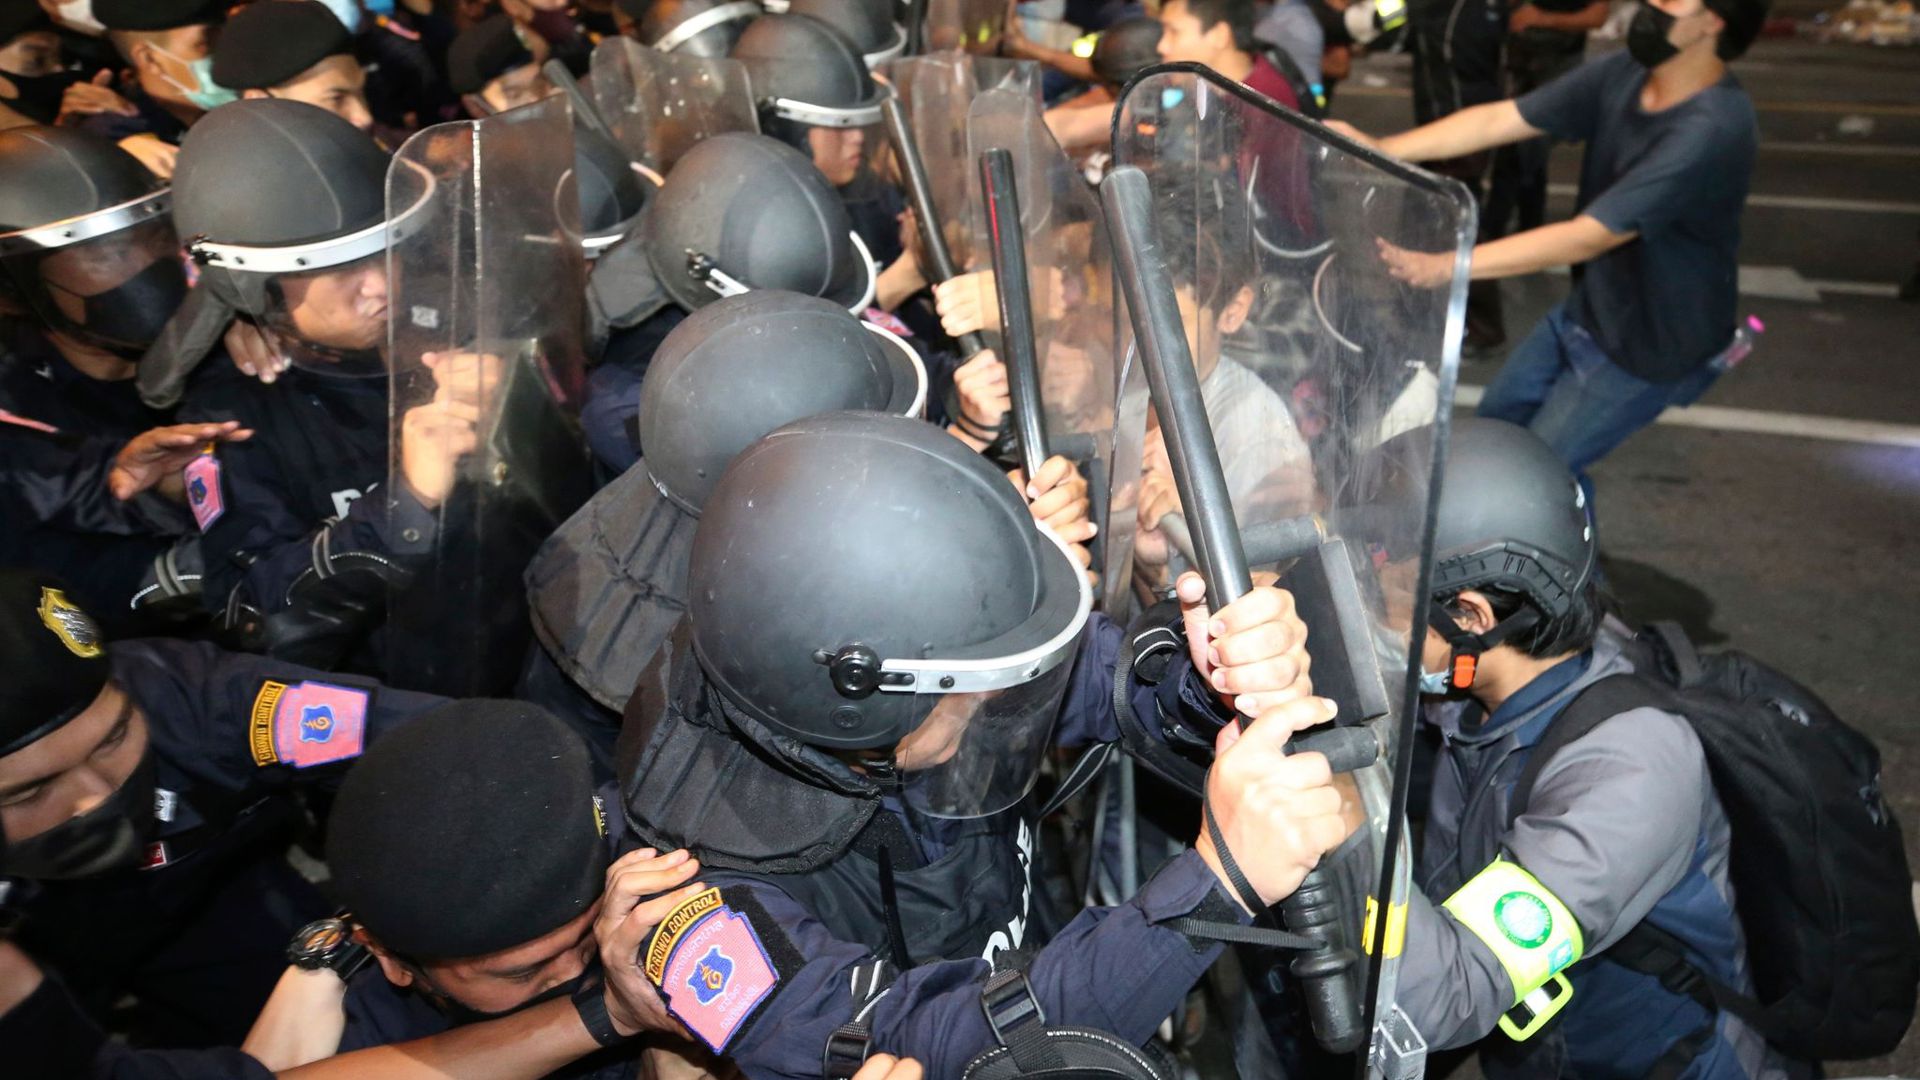 Pro-demokratische Demonstranten stoßen während eines Protests mit Polizisten zusammen.